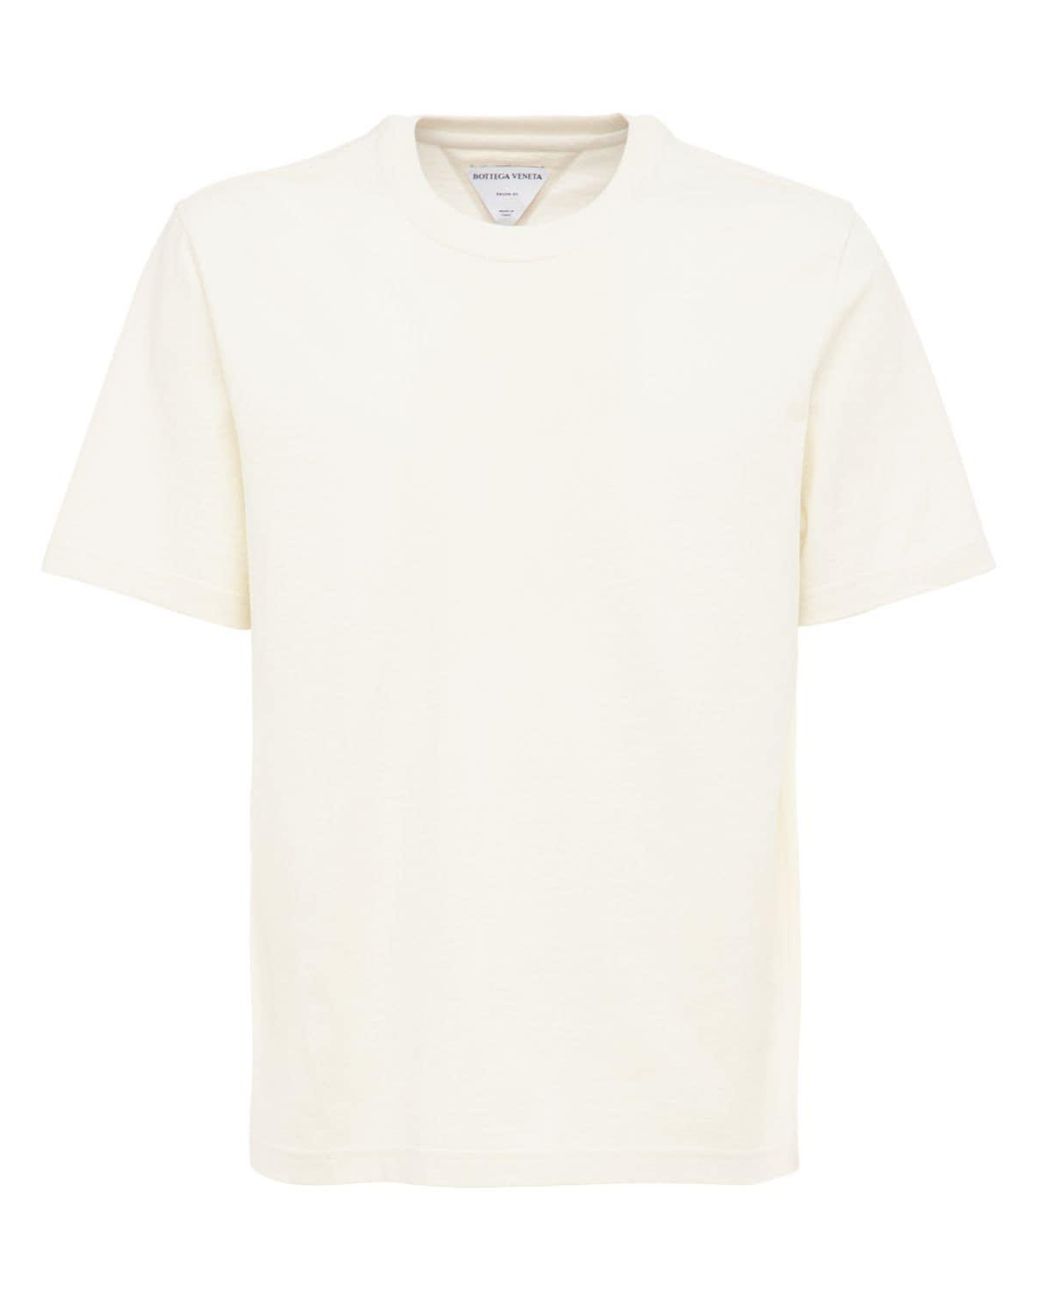 Bottega Veneta Sunrise Light Cotton Jersey T-shirt in White for Men - Lyst